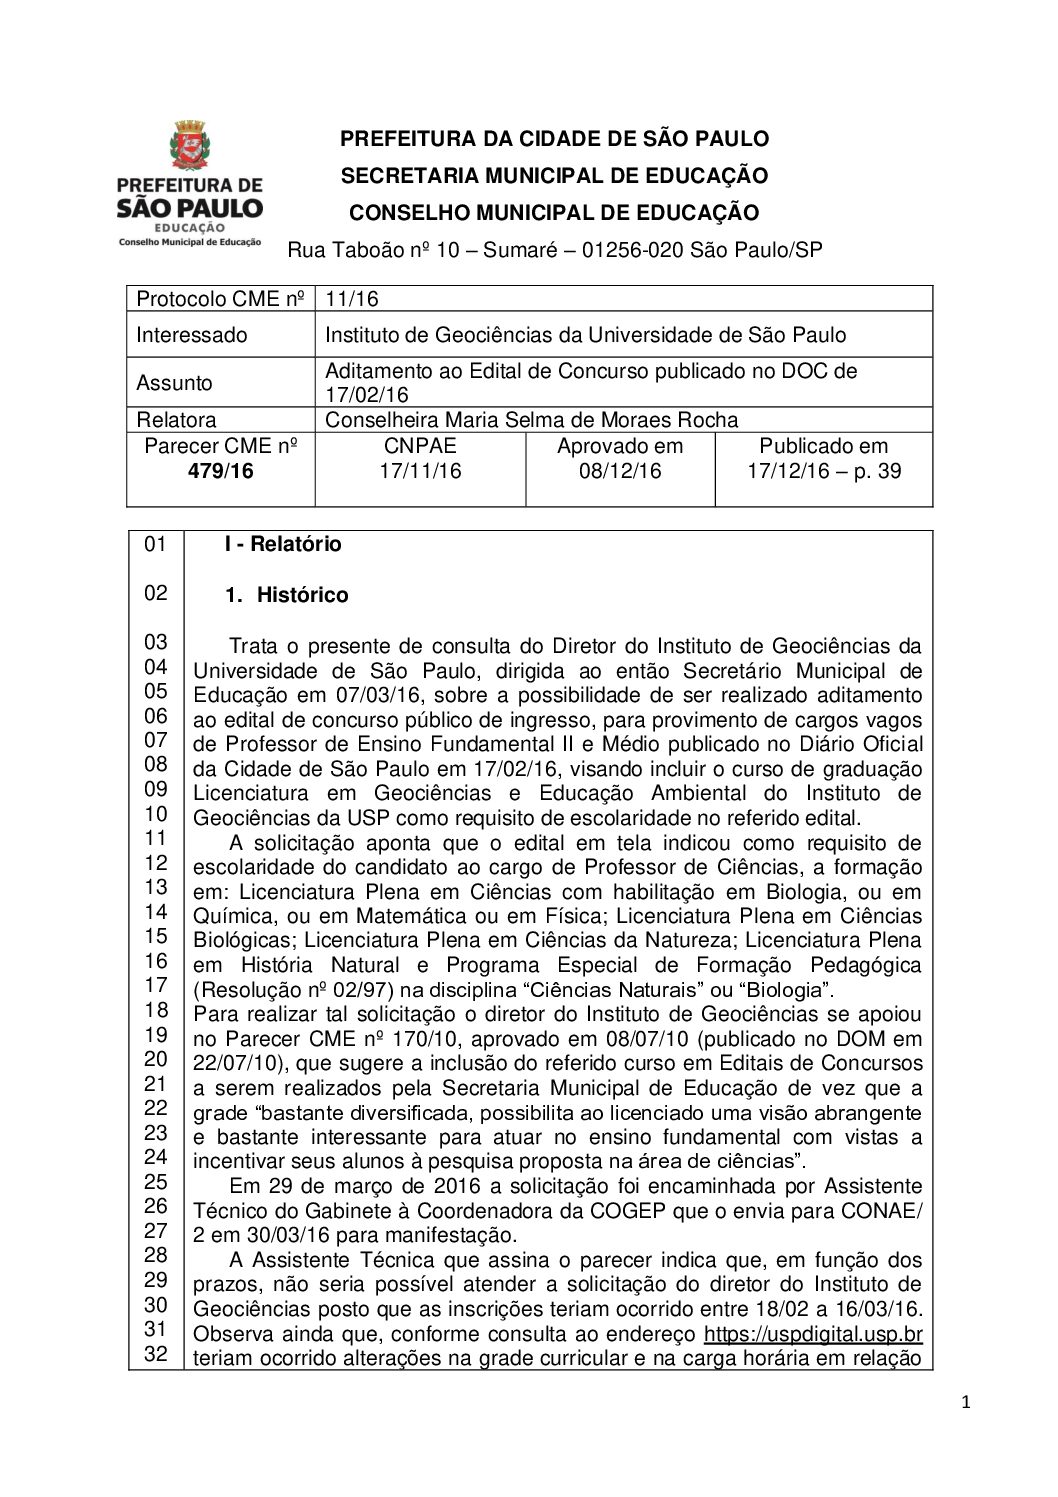 Parecer CME nº 479/2016 - Instituto de Geociências da Universidade de São Paulo - Aditamento ao Edital de Concurso publicado no DOC de 17/02/2016